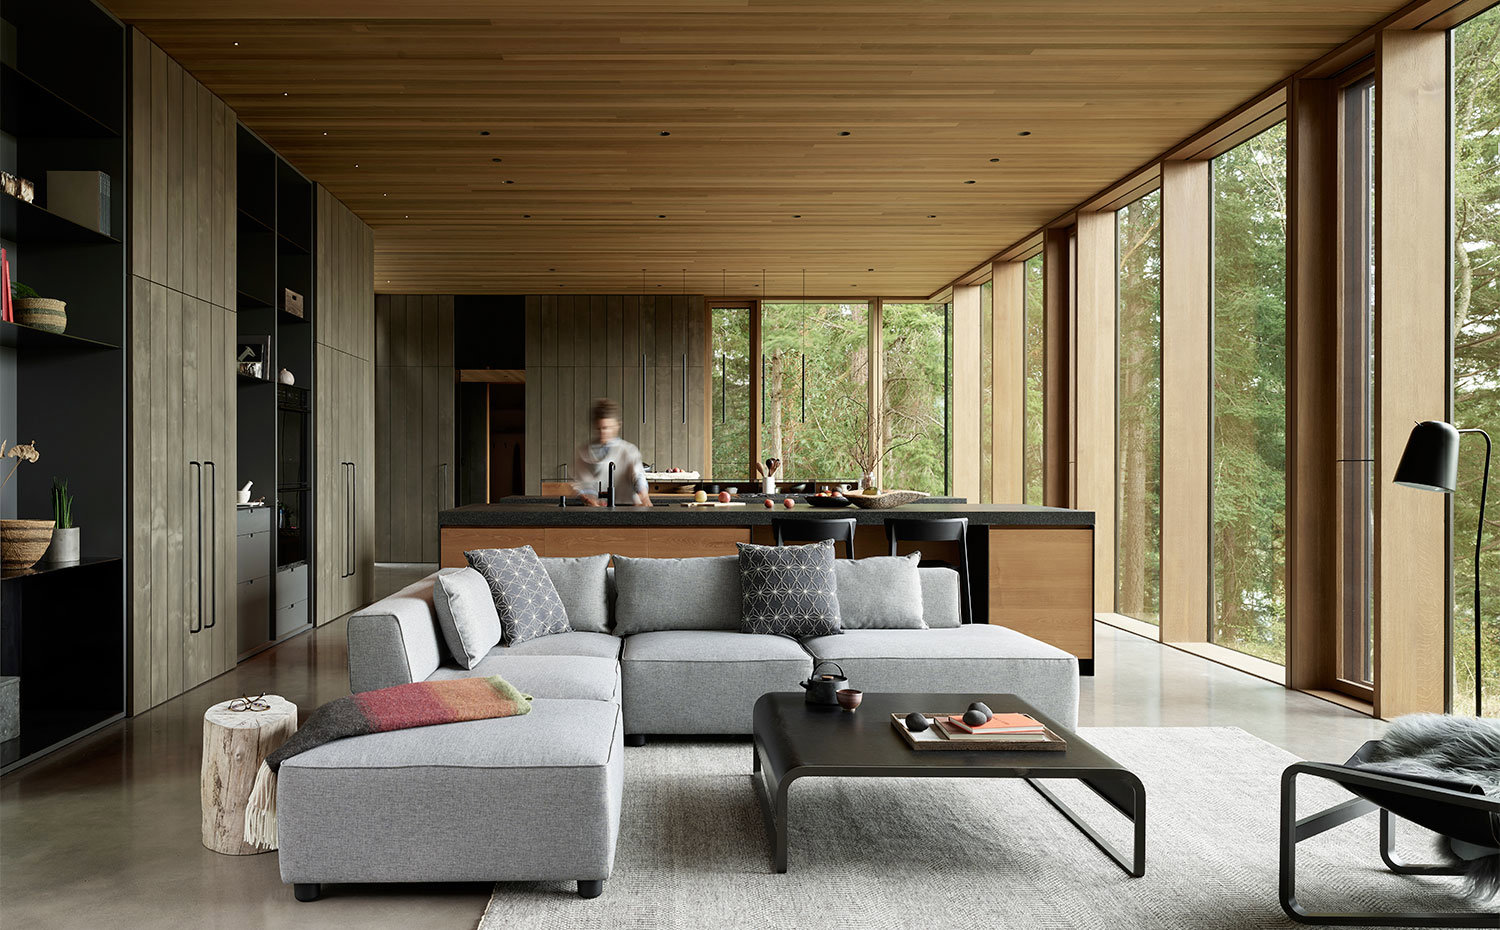 Salón moderno con cocina abierta, sofá en gris, mesa de color negro y mobiliario y techo revestido de madera.